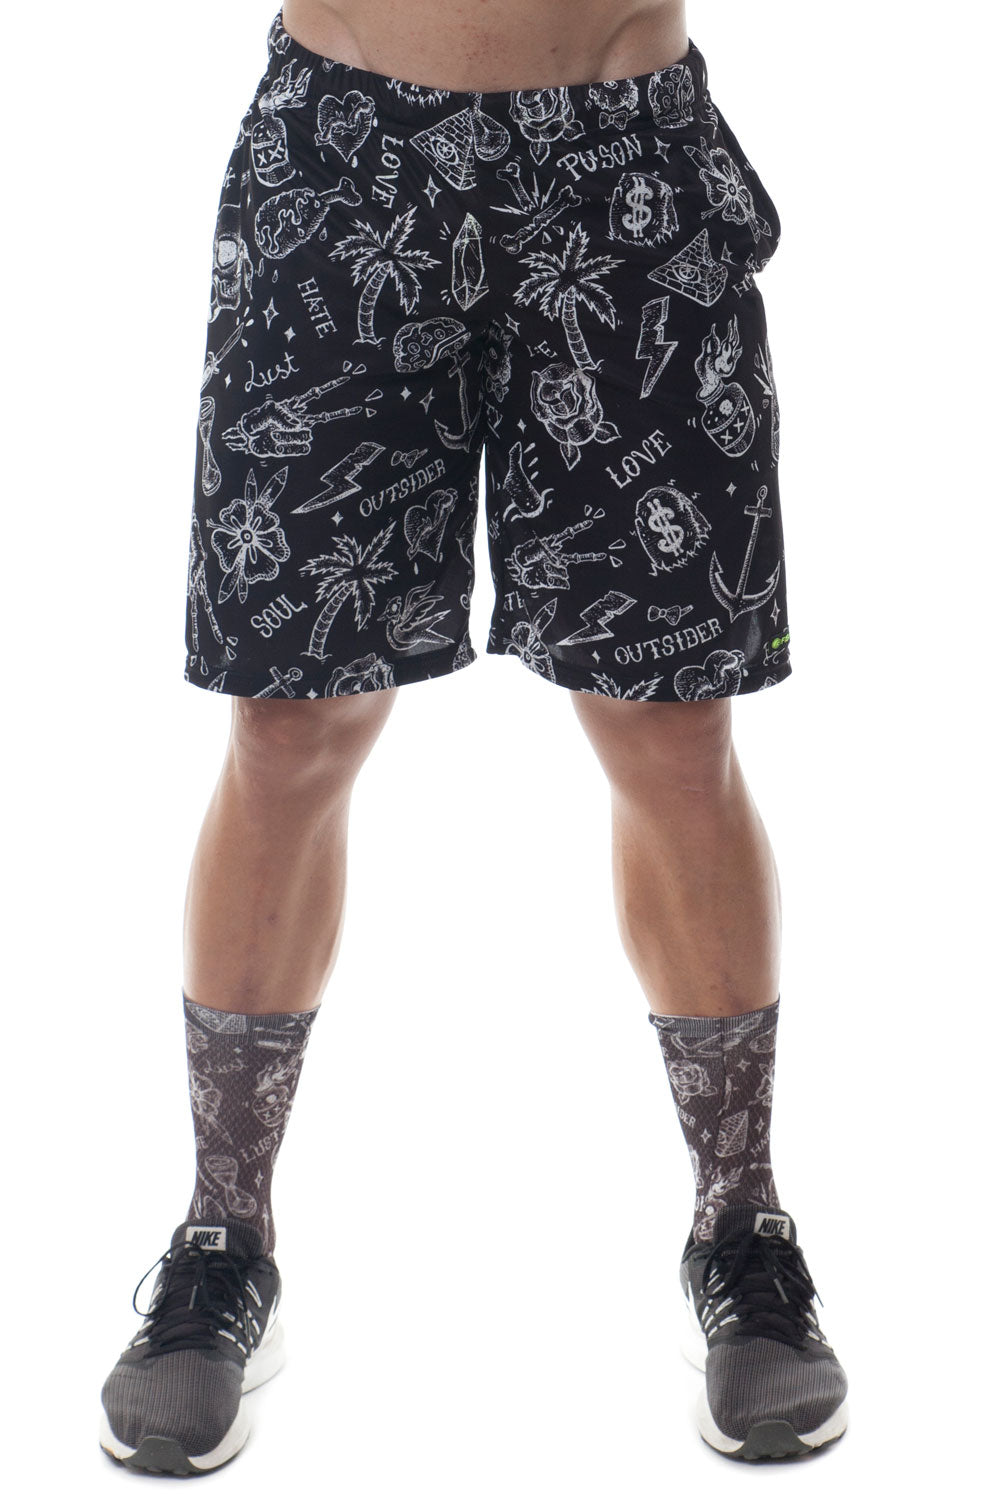 Padel Guilty shorts